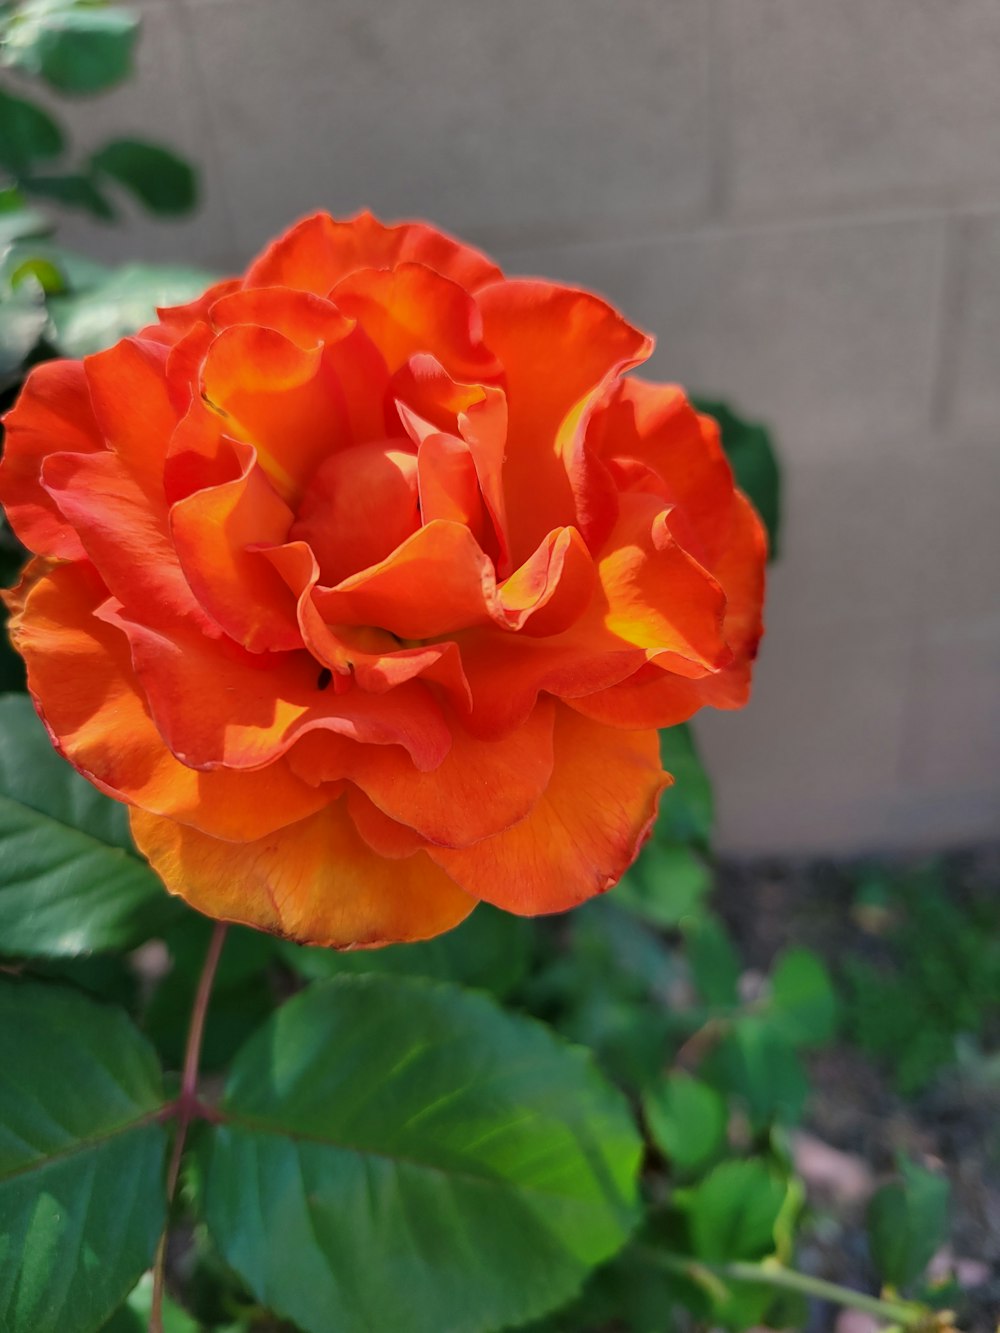 a large orange flower in a garden